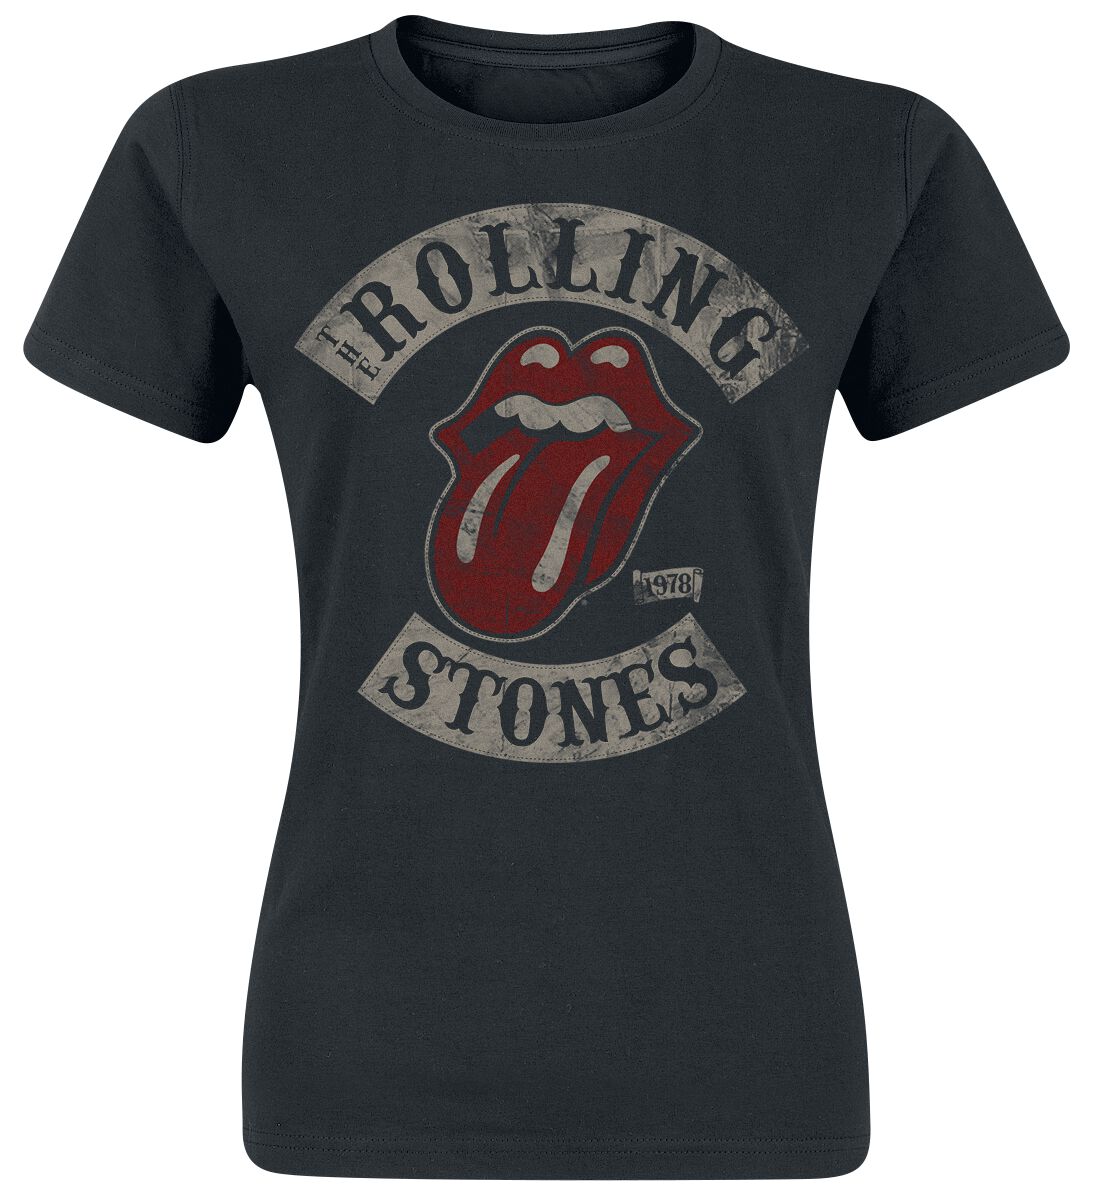 T-Shirt Manches courtes de The Rolling Stones - 1978 - S à XXL - pour Femme - noir